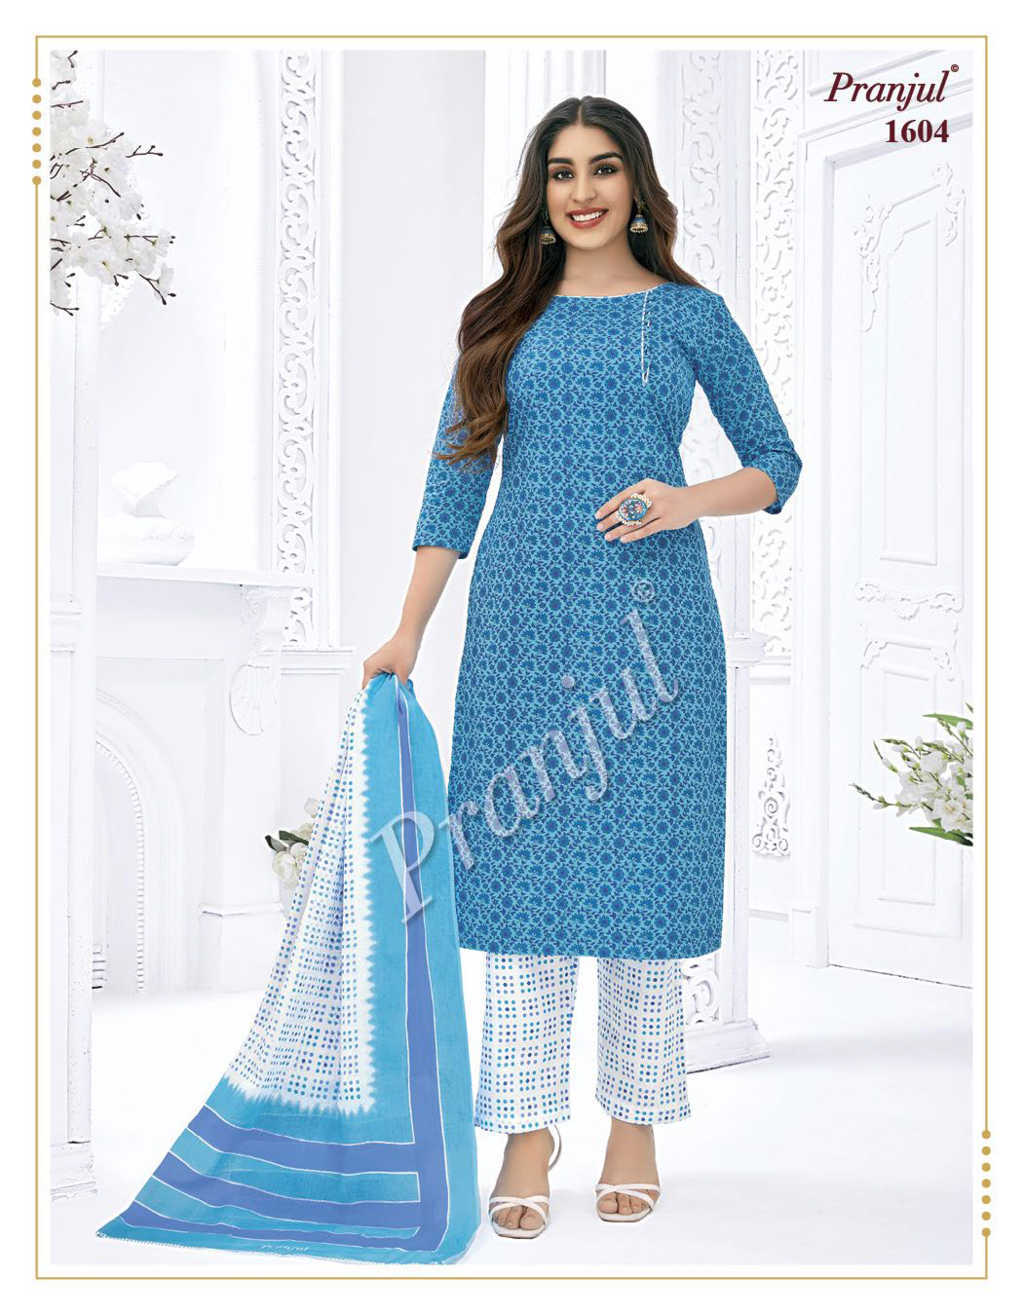 Pranjul Priyanka Vol 15 Printed Cotton Dress Material At Wholesale Rate